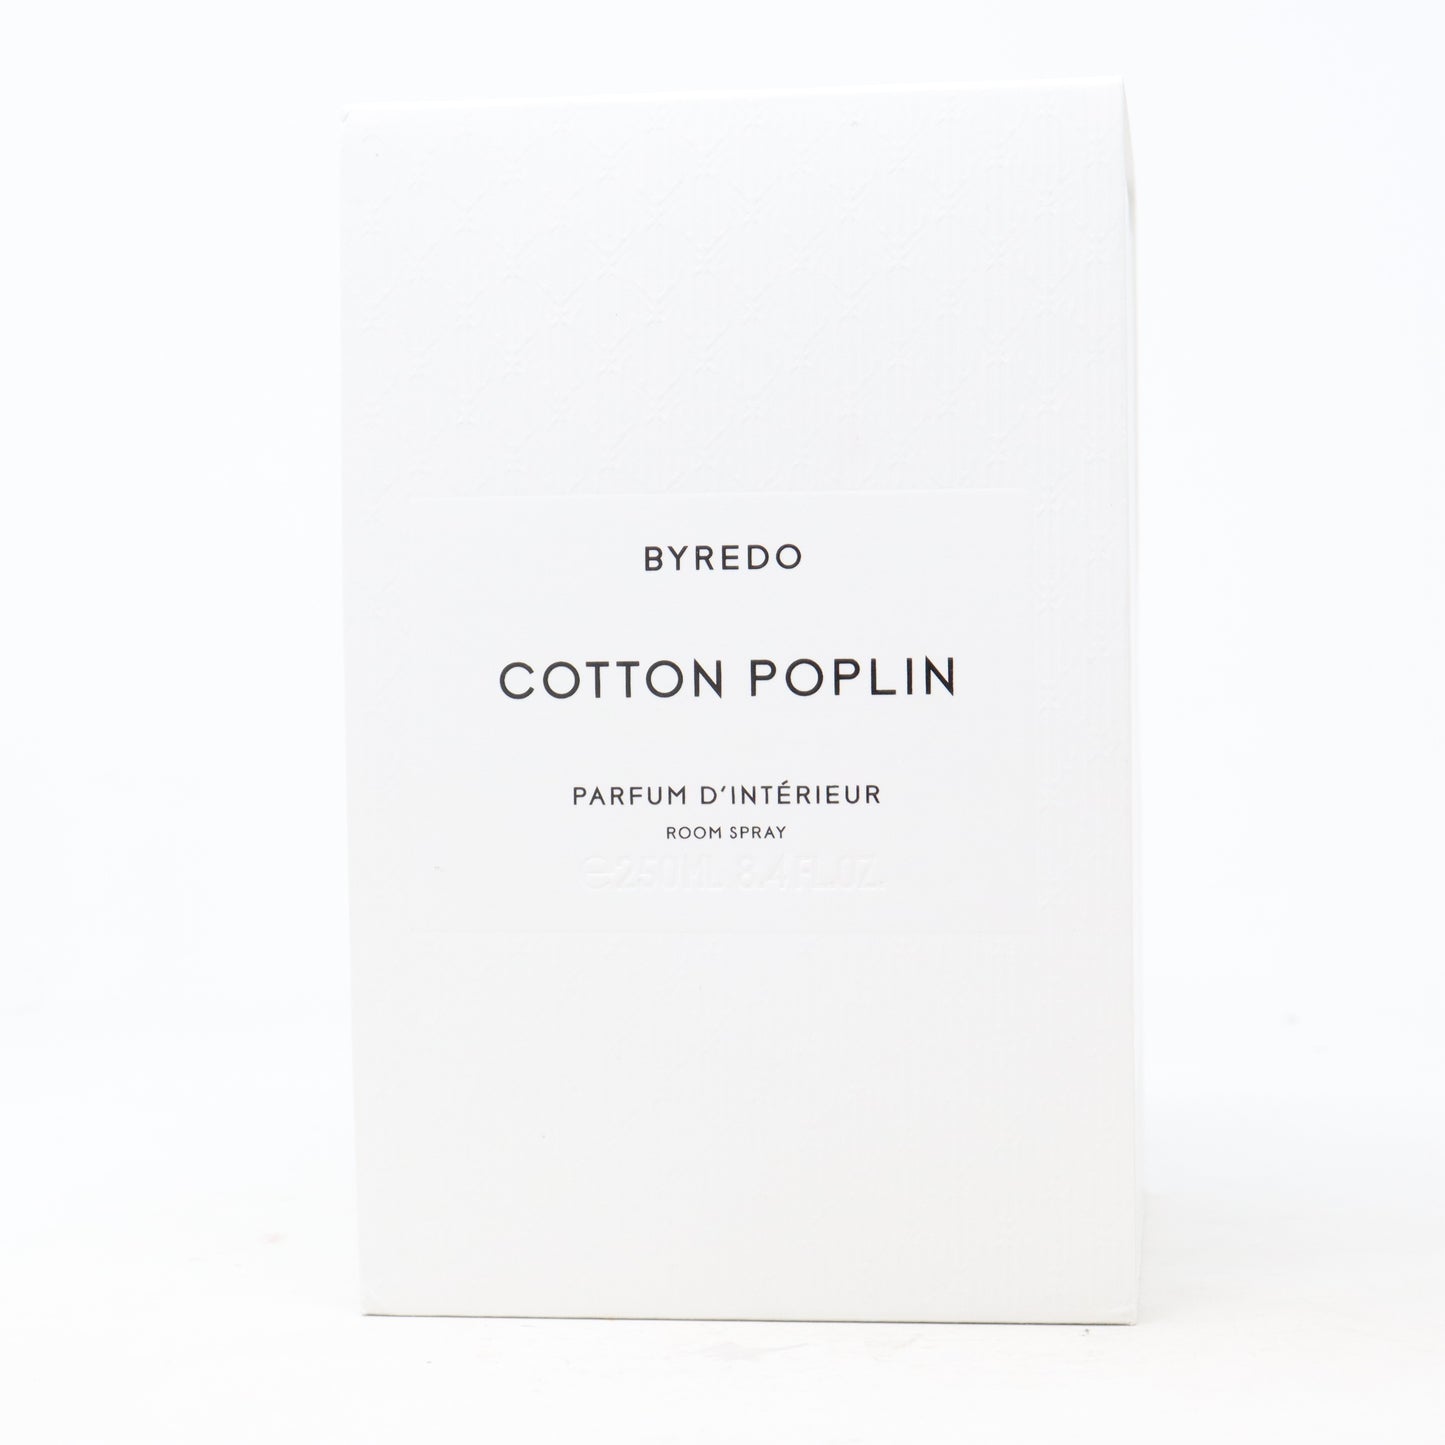 Cotton Poplin by Byredo Room Spray 8.4oz/250ml Spray New With Box